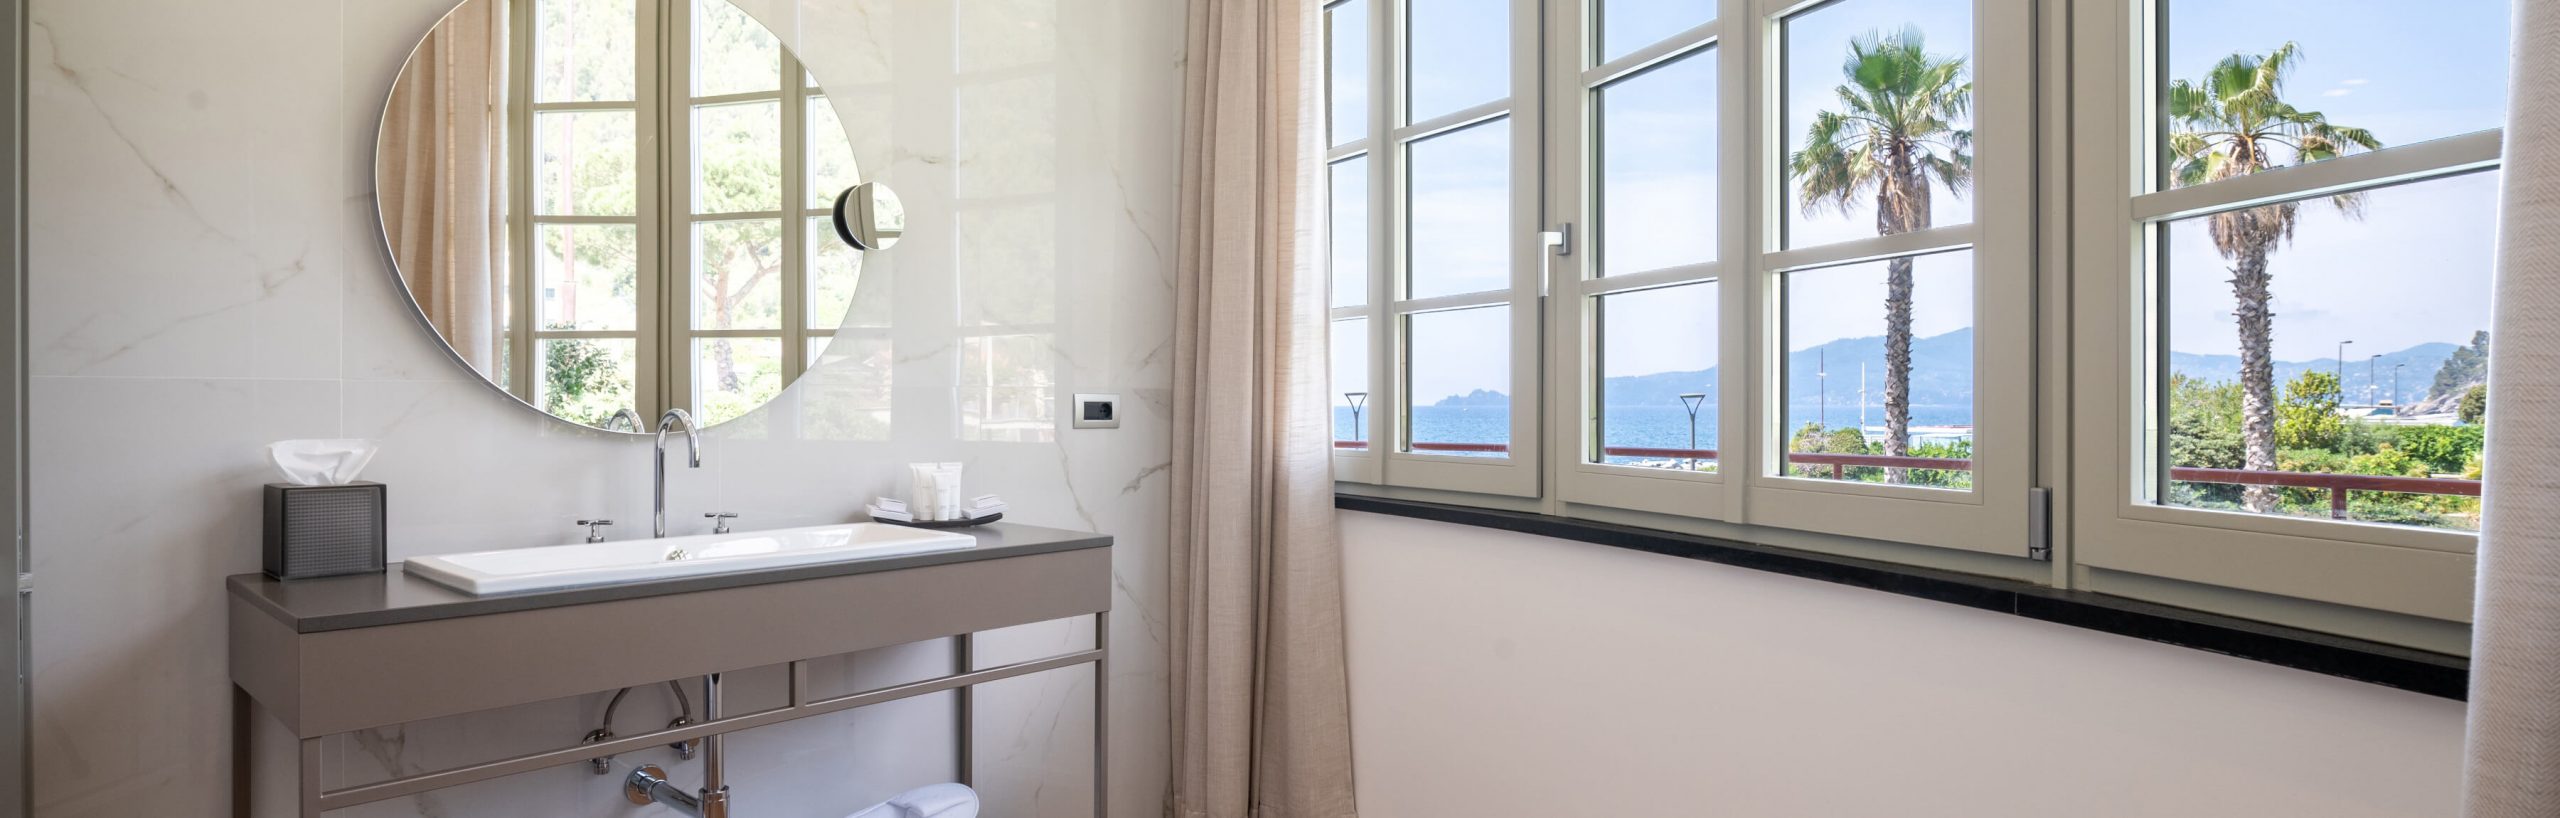 Grand-Hotel-Torre-Fara-Doppia-privilege-vista-Portofino-13